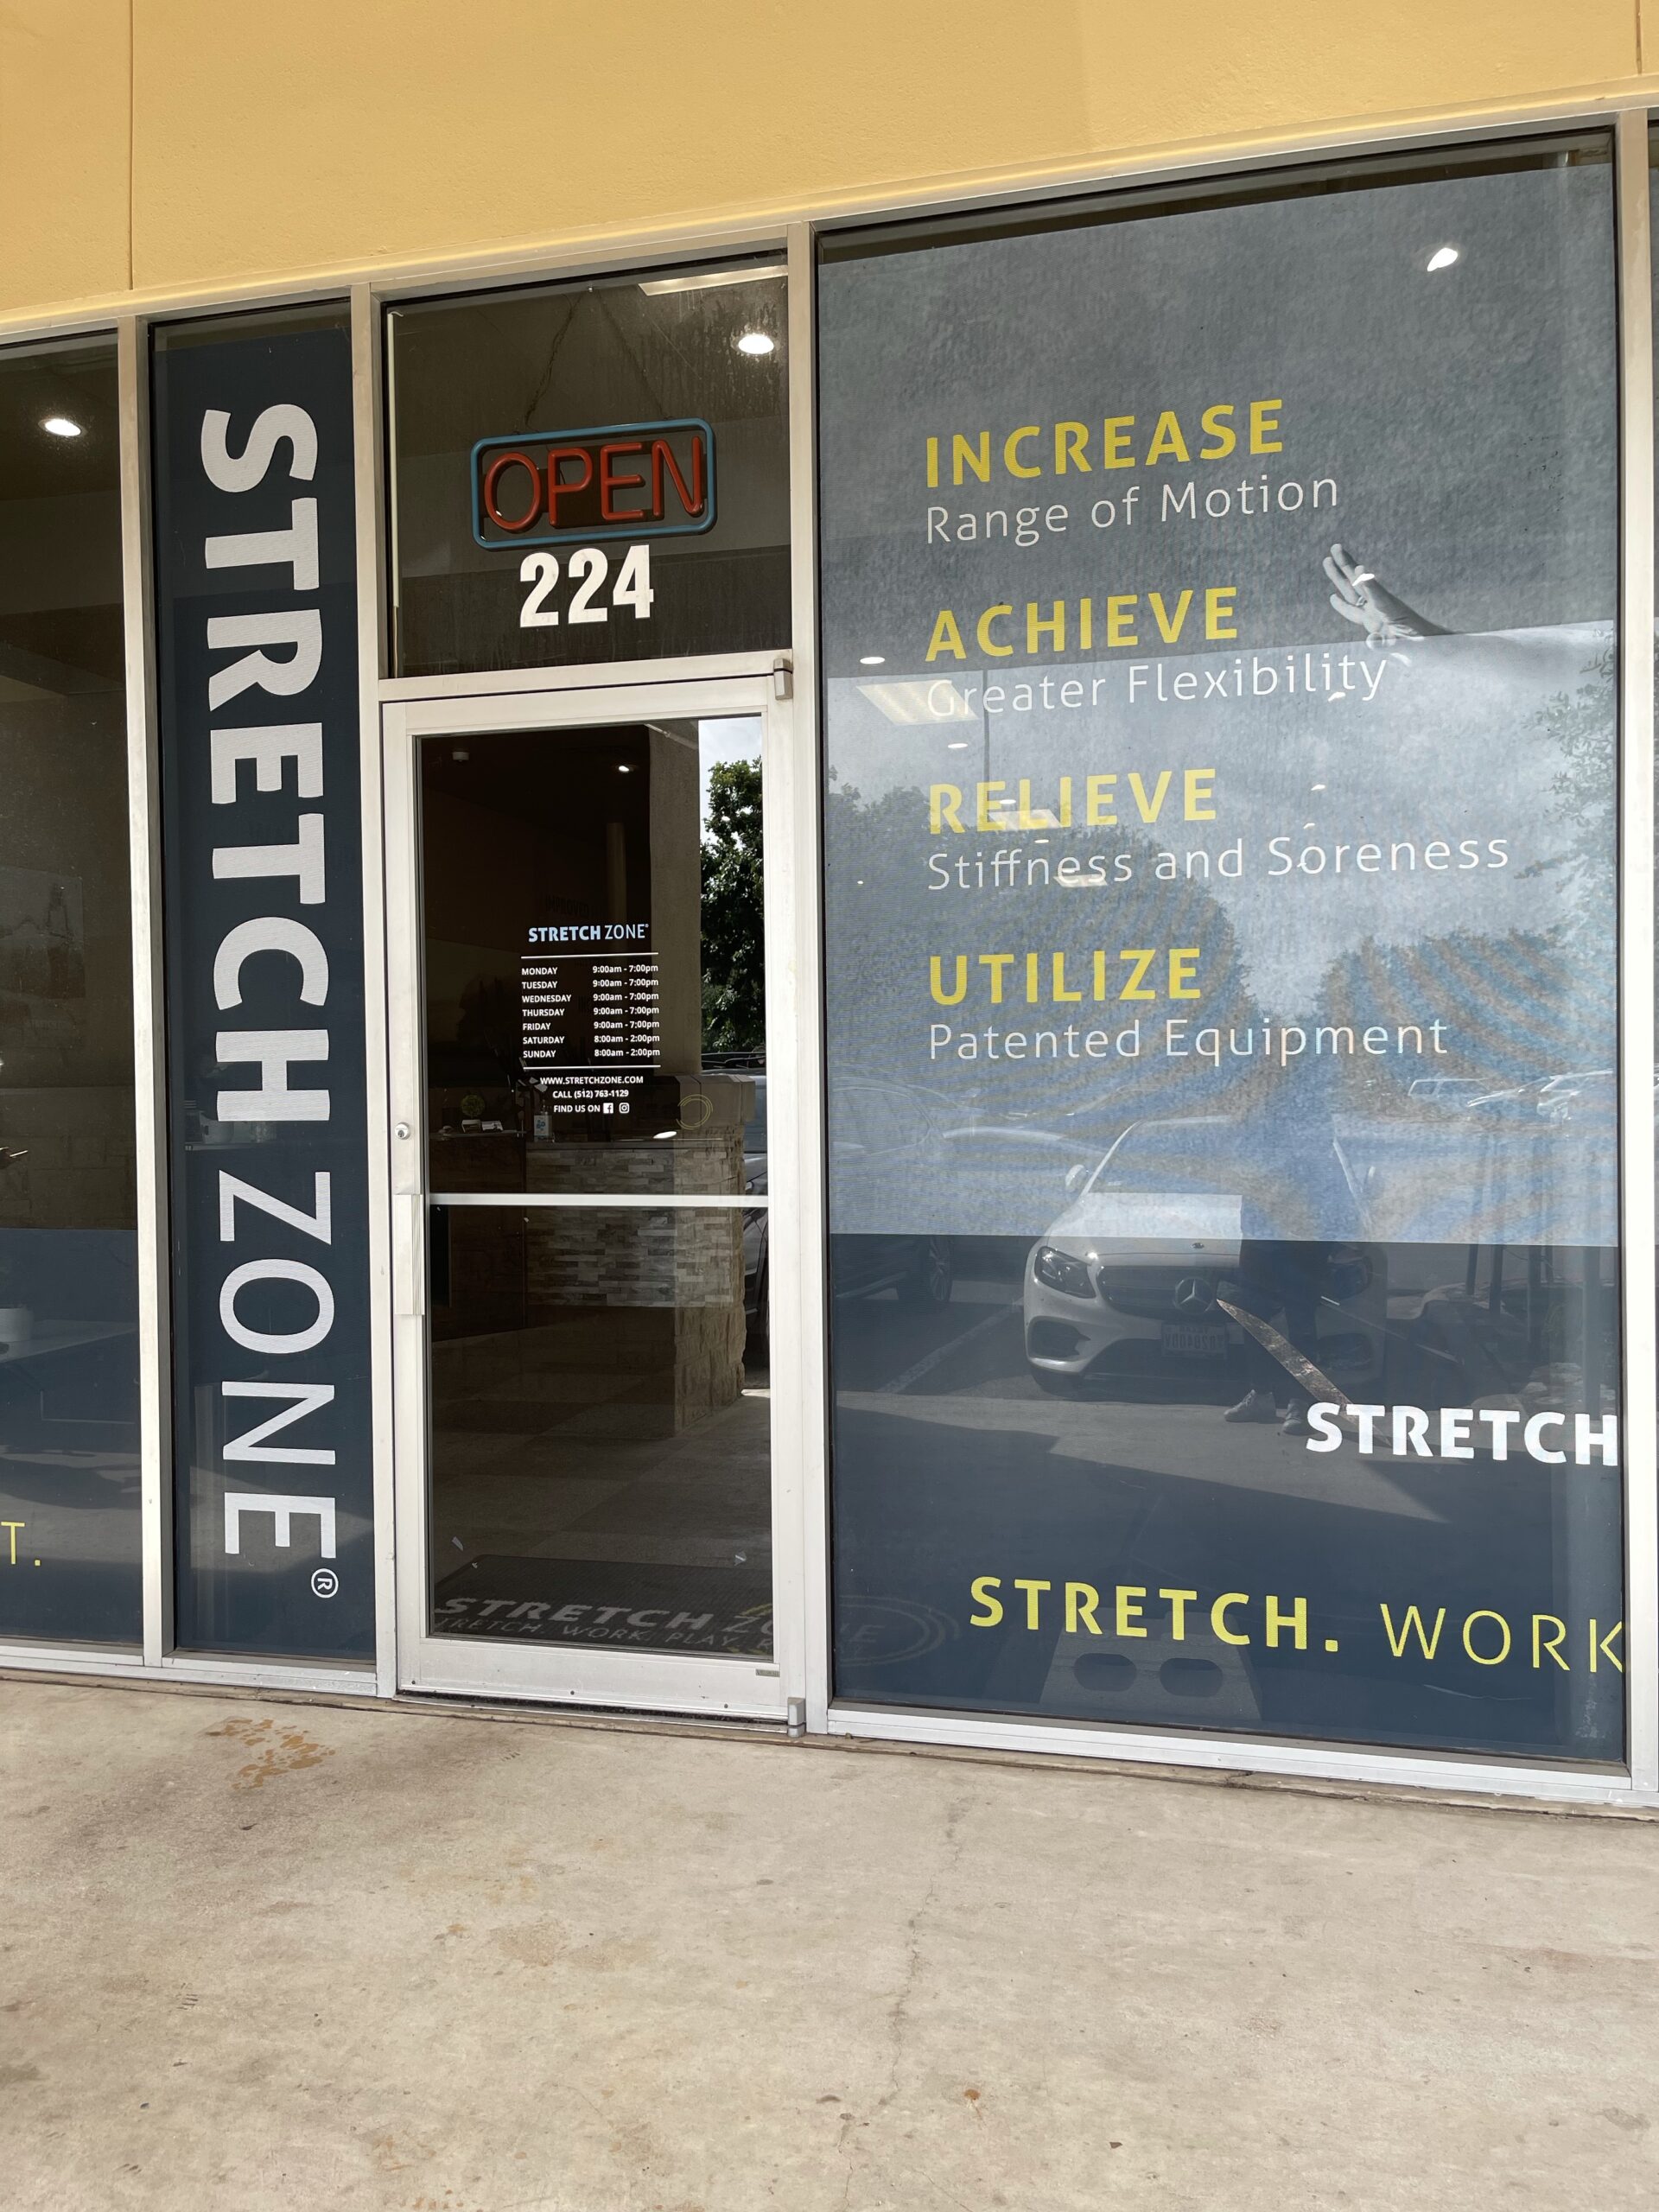 Stretch Zone Georgetown, improve flexibility